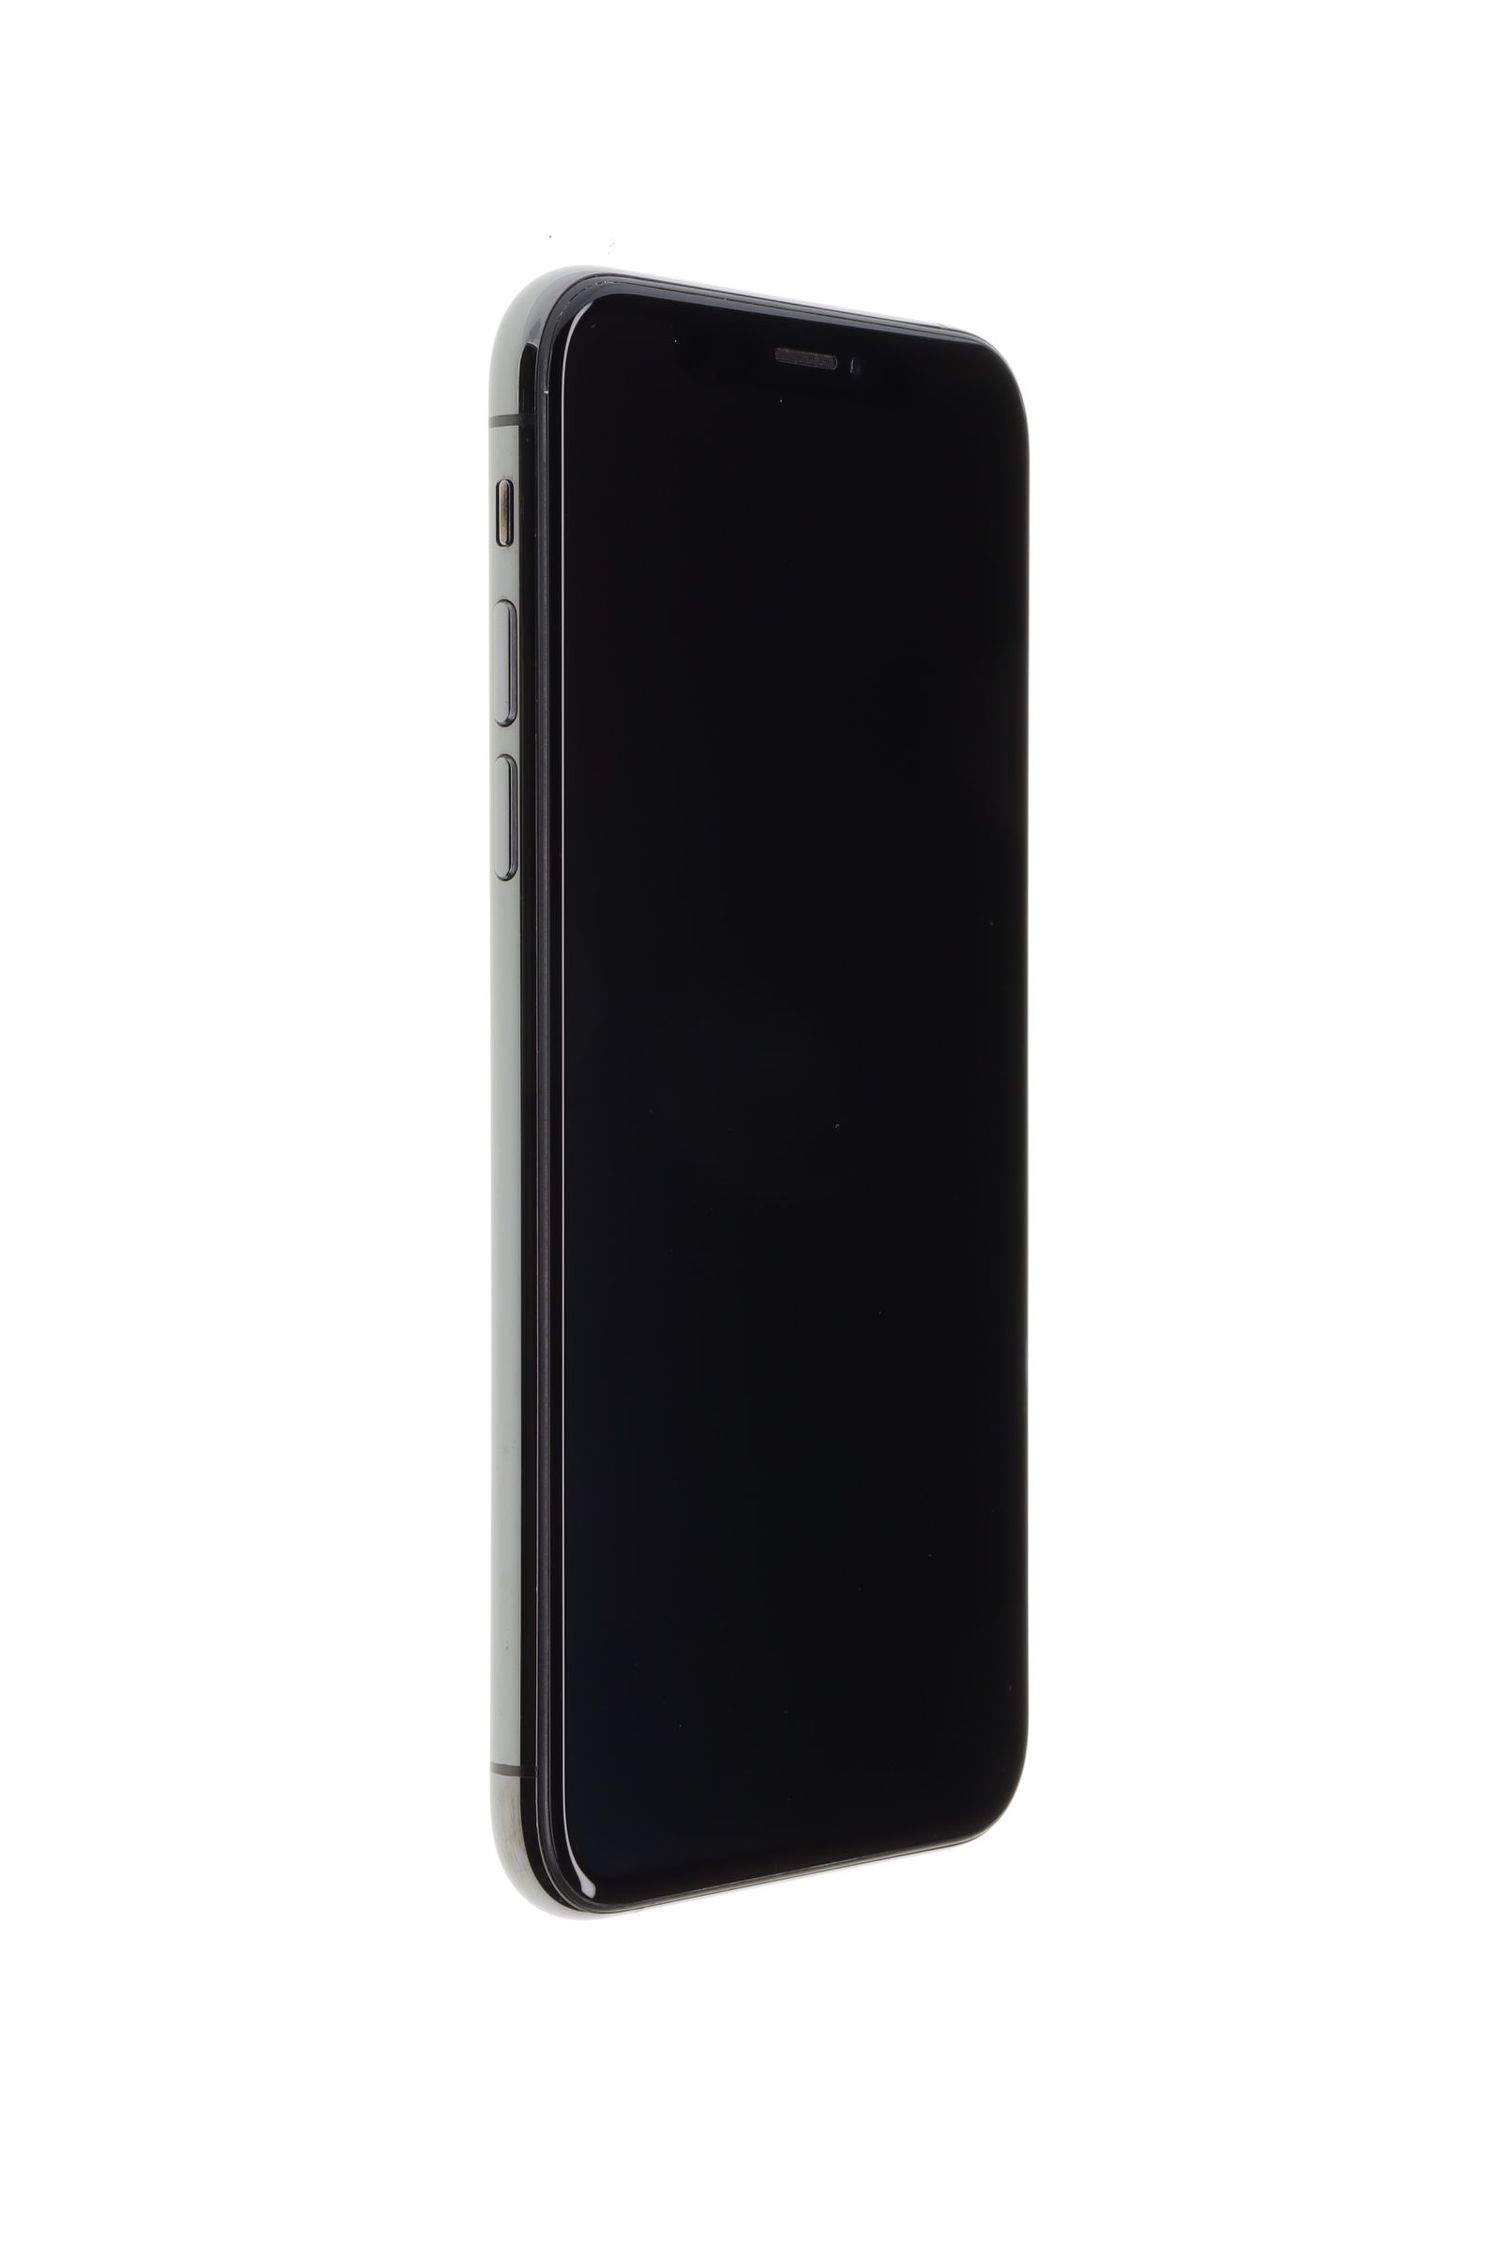 Κινητό τηλέφωνο Apple iPhone XS, Space Grey, 64 GB, Foarte Bun